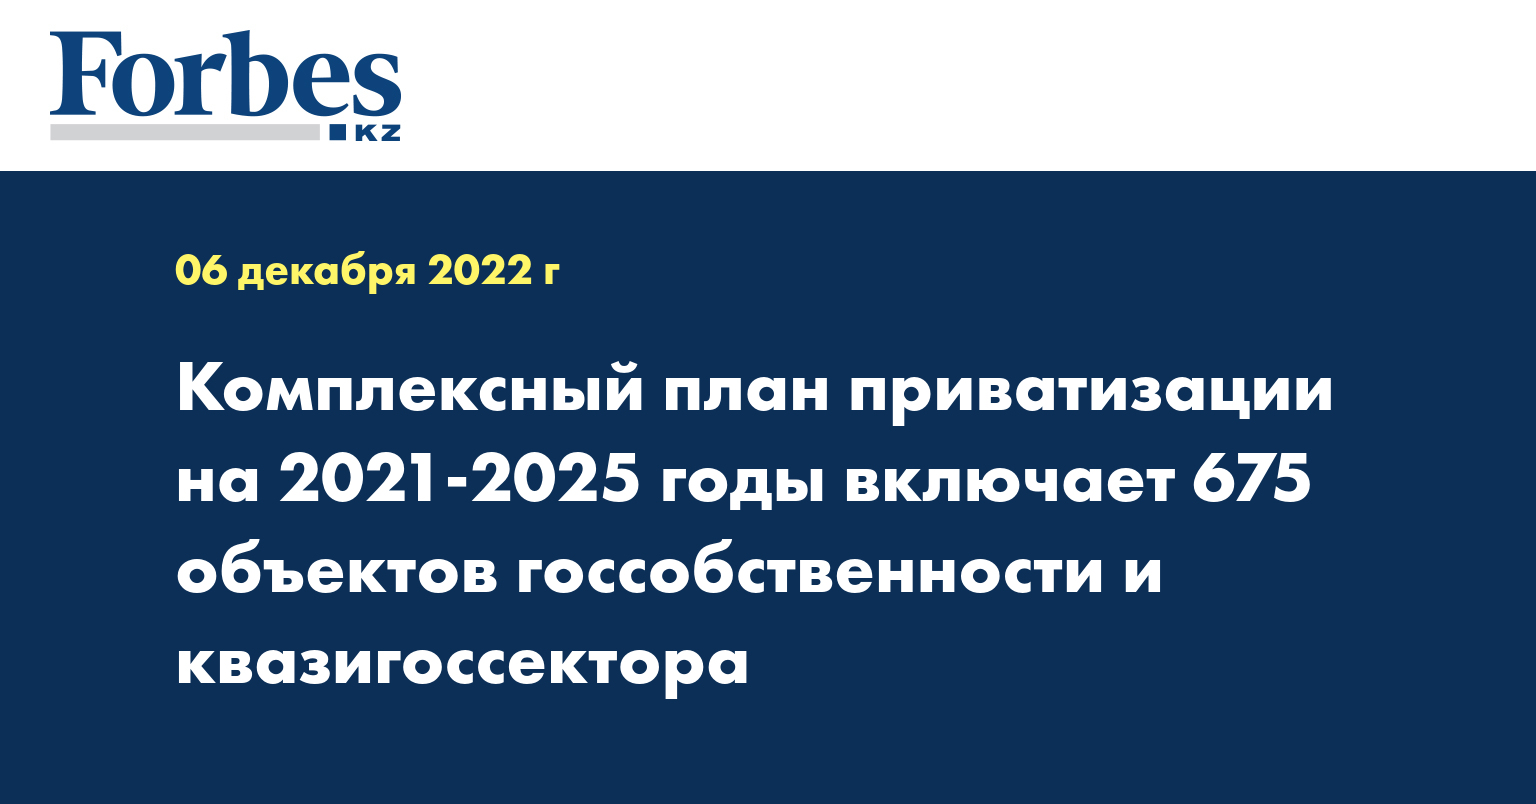 Комплексный план приватизации на 2021-2025 годы включает 675 объектов госсобственности и квазигосcектора